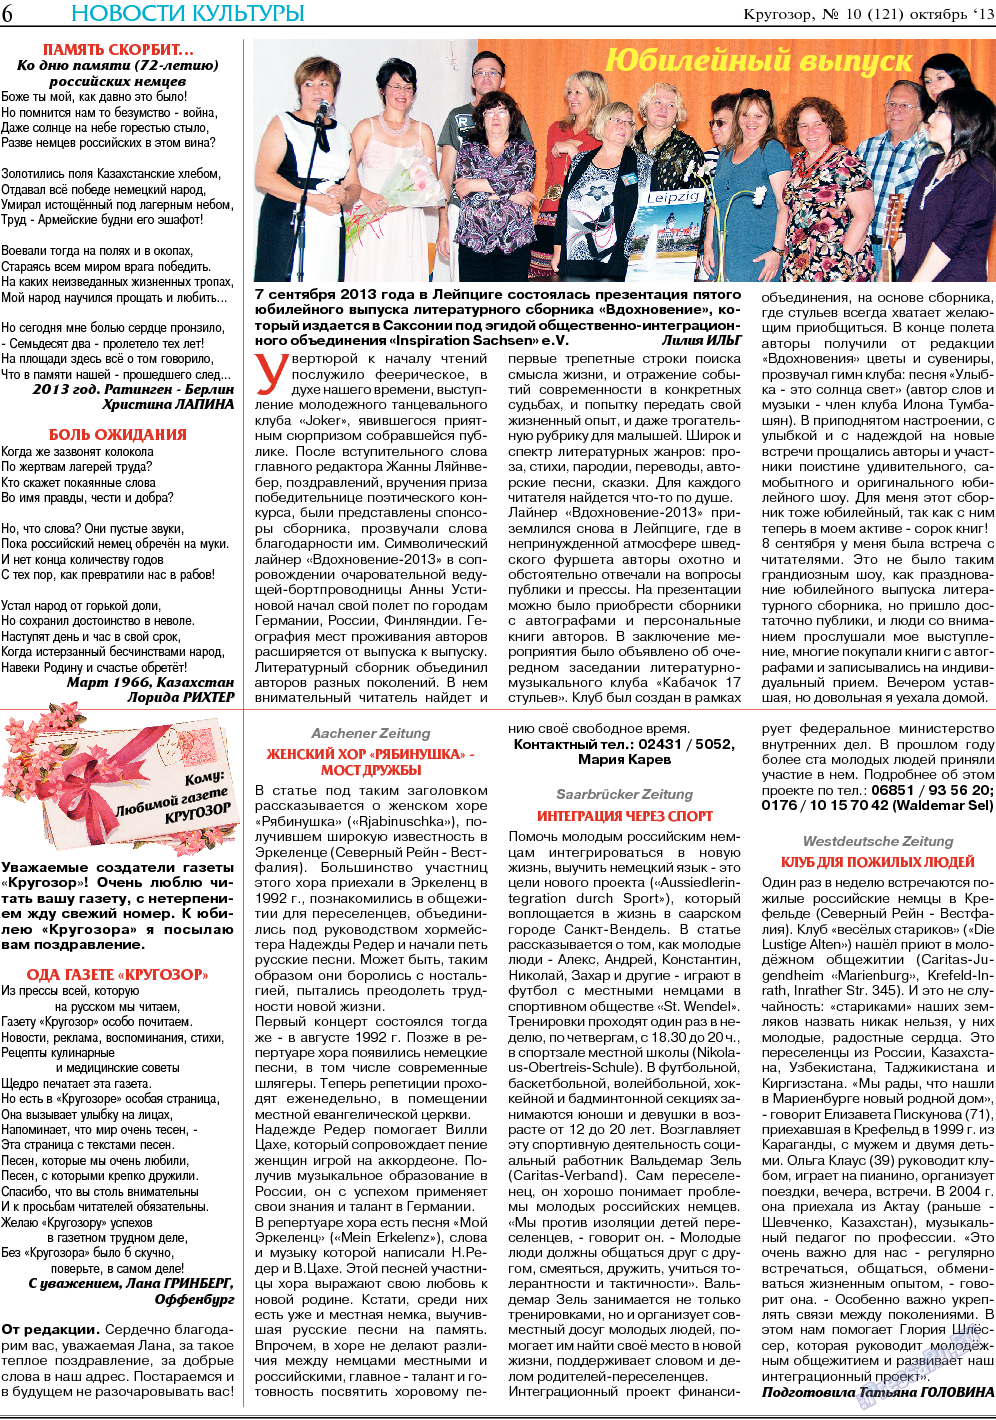 Кругозор (газета). 2013 год, номер 10, стр. 6